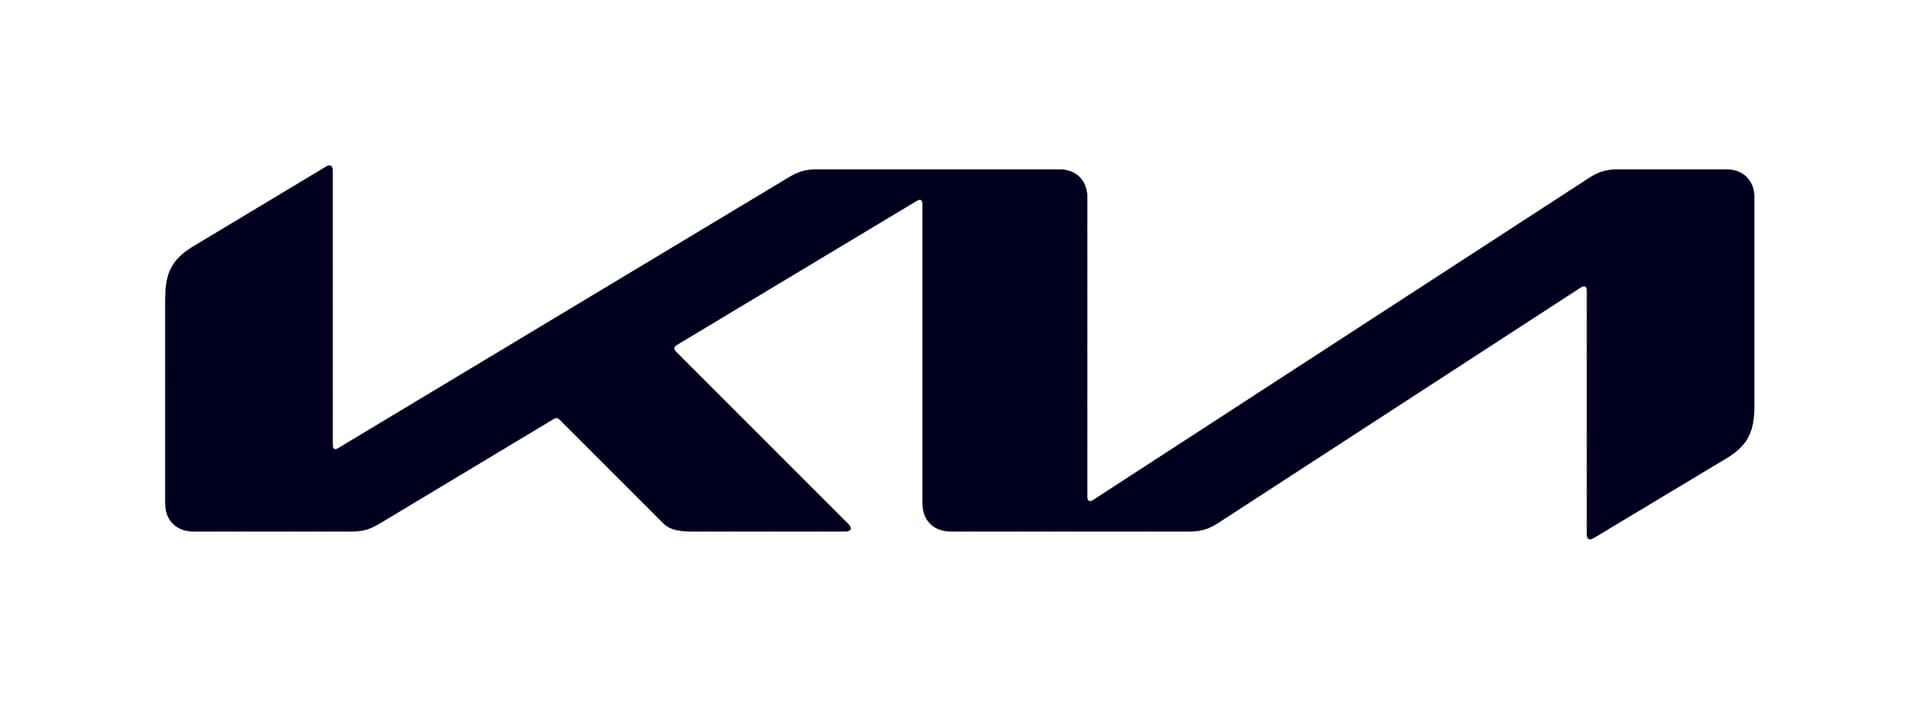 Neues Kia-Logo: Mit seinem Vorgänger hat es keine Gemeinsamkeiten.